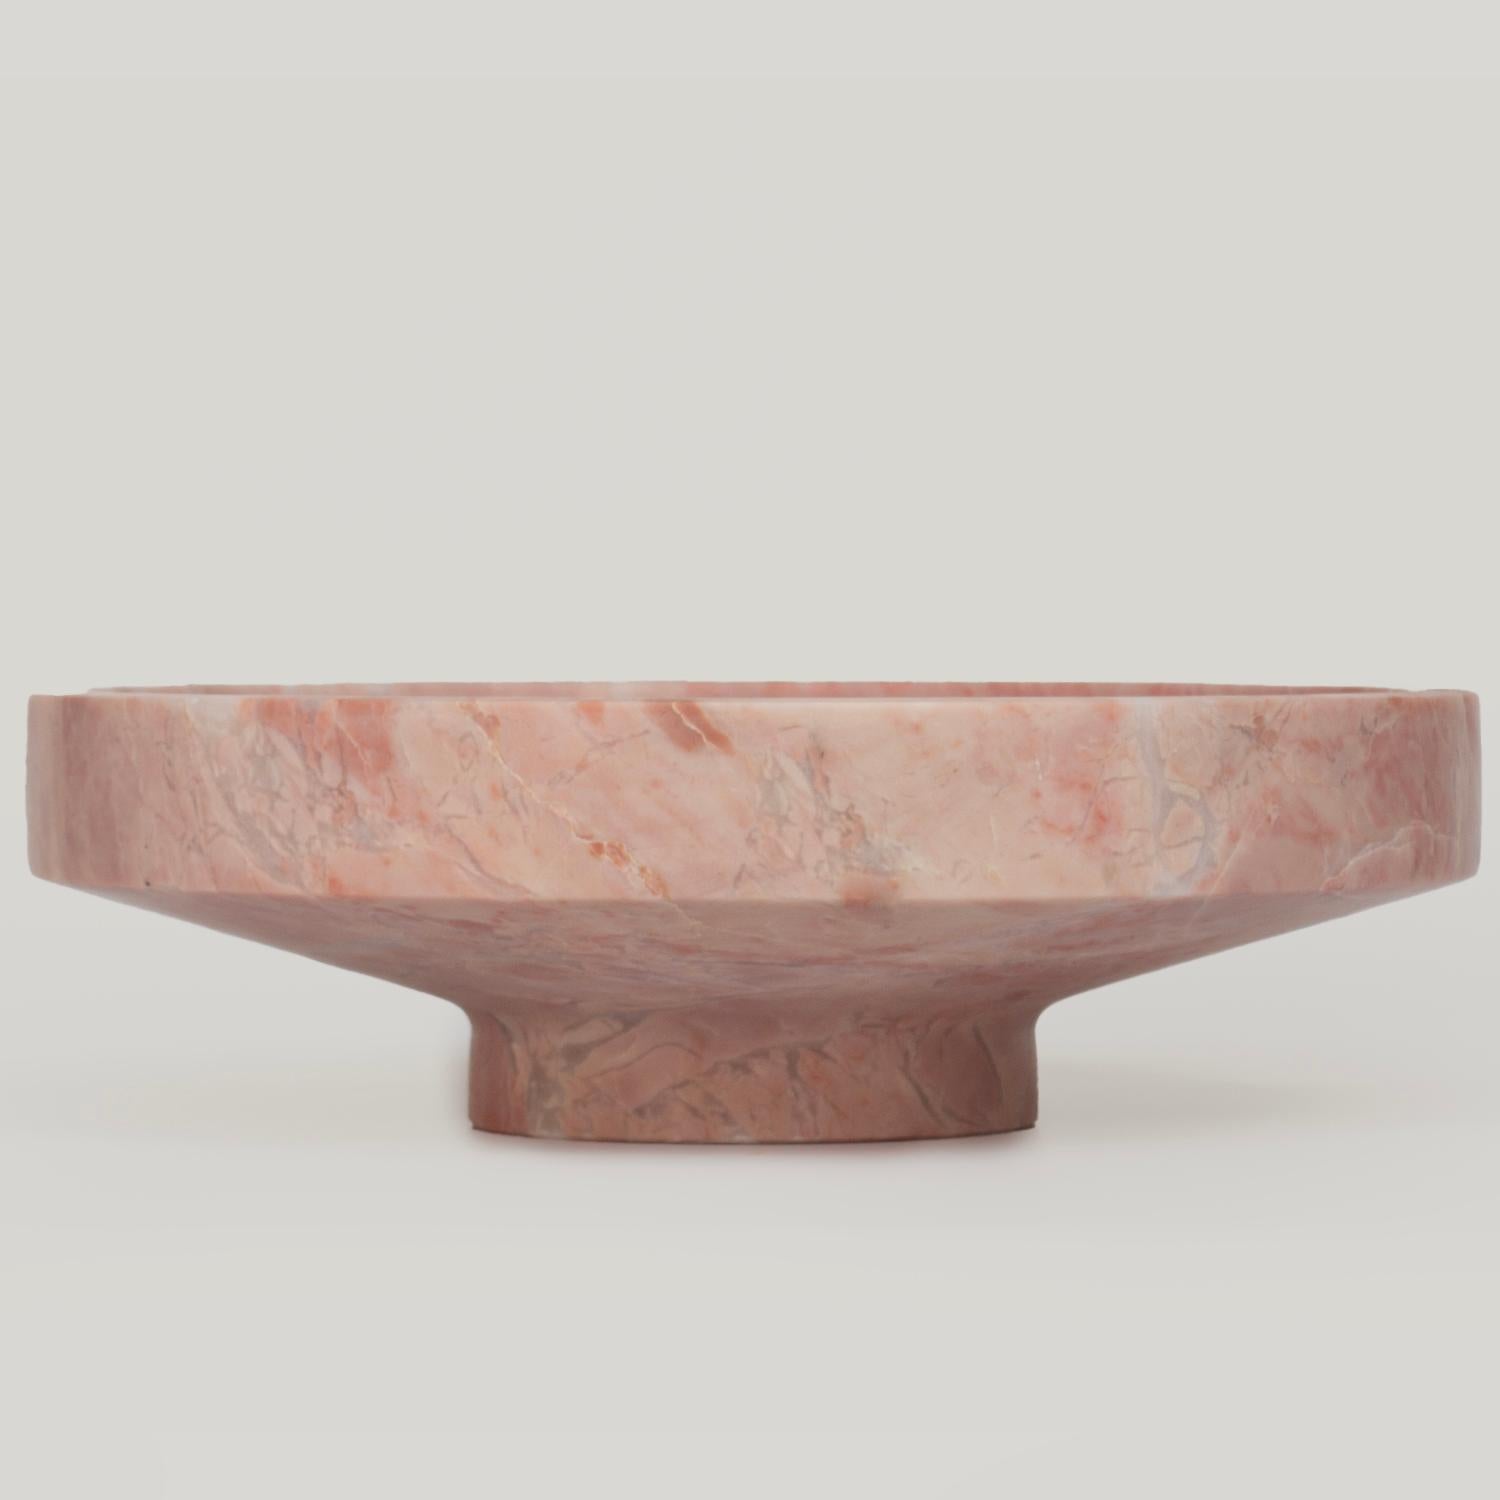 Stupefacente, estetico, senza tempo sono le parole che possono essere usate per descrivere questa elegante e moderna cornice in marmo rosa.  ciotola di Kiwano. Sapientemente lavorate e rifinite a mano, le nostre ciotole in travertino sono uno studio